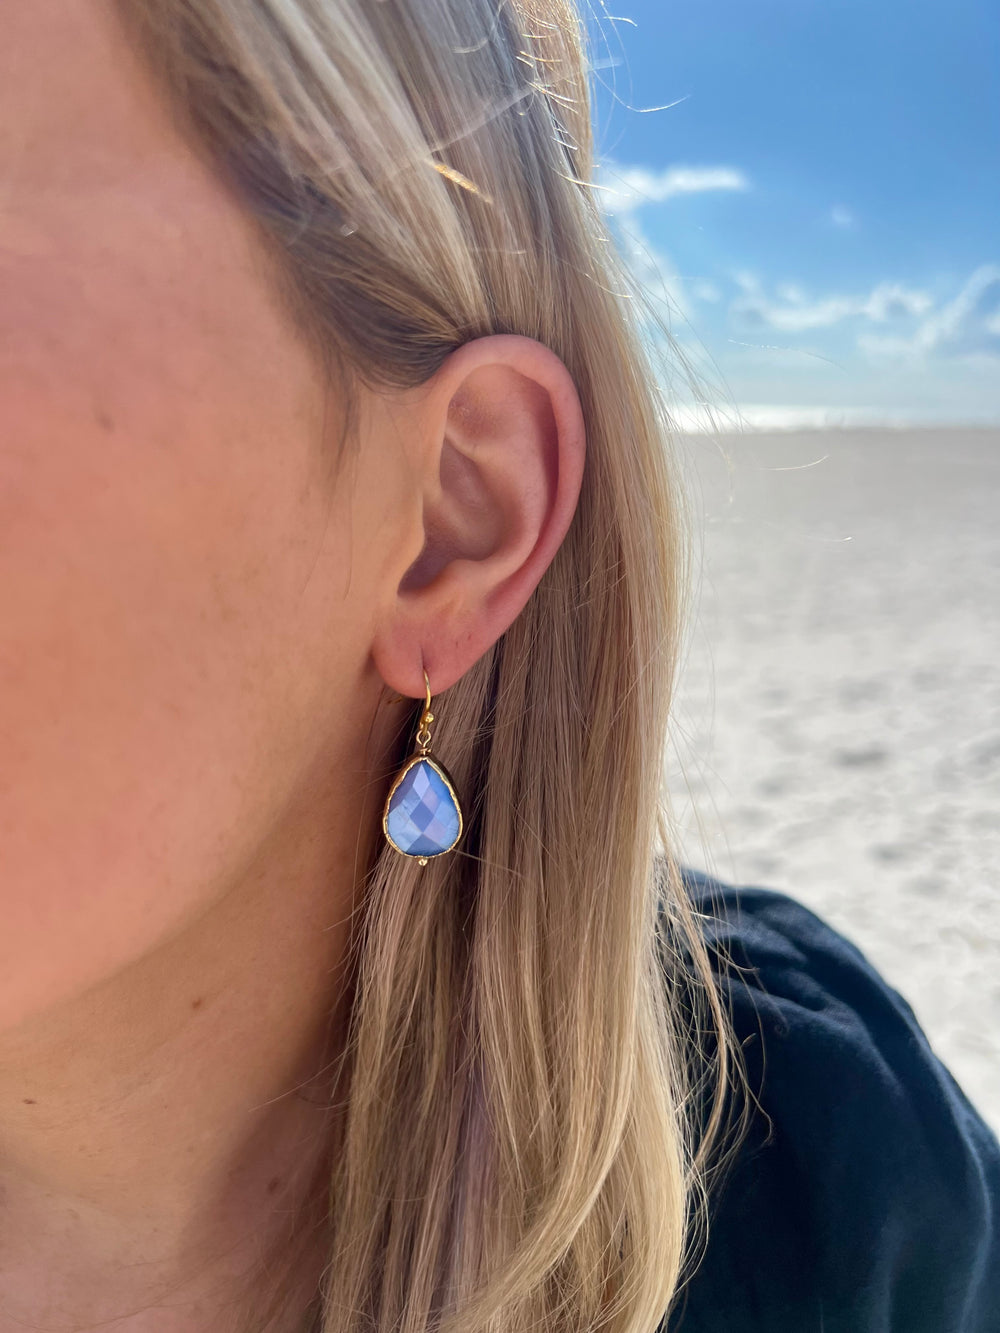 Blue and gold nickel free tear drop shaped earrings in ear